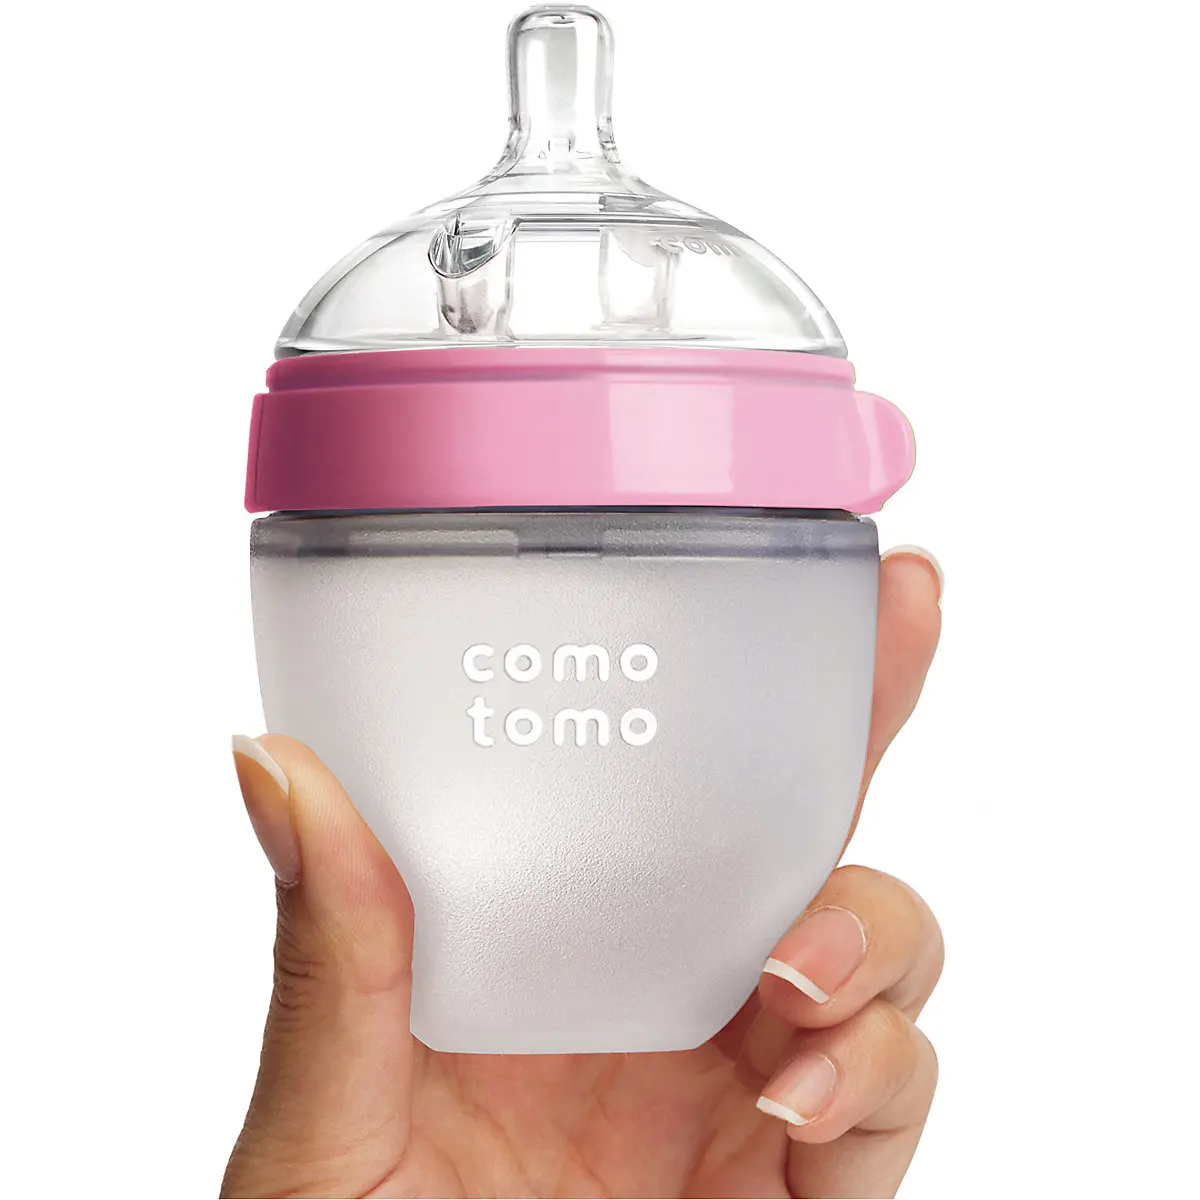 Бутылочка для кормления Comotomo Natural Feel, 150 мл., розовый